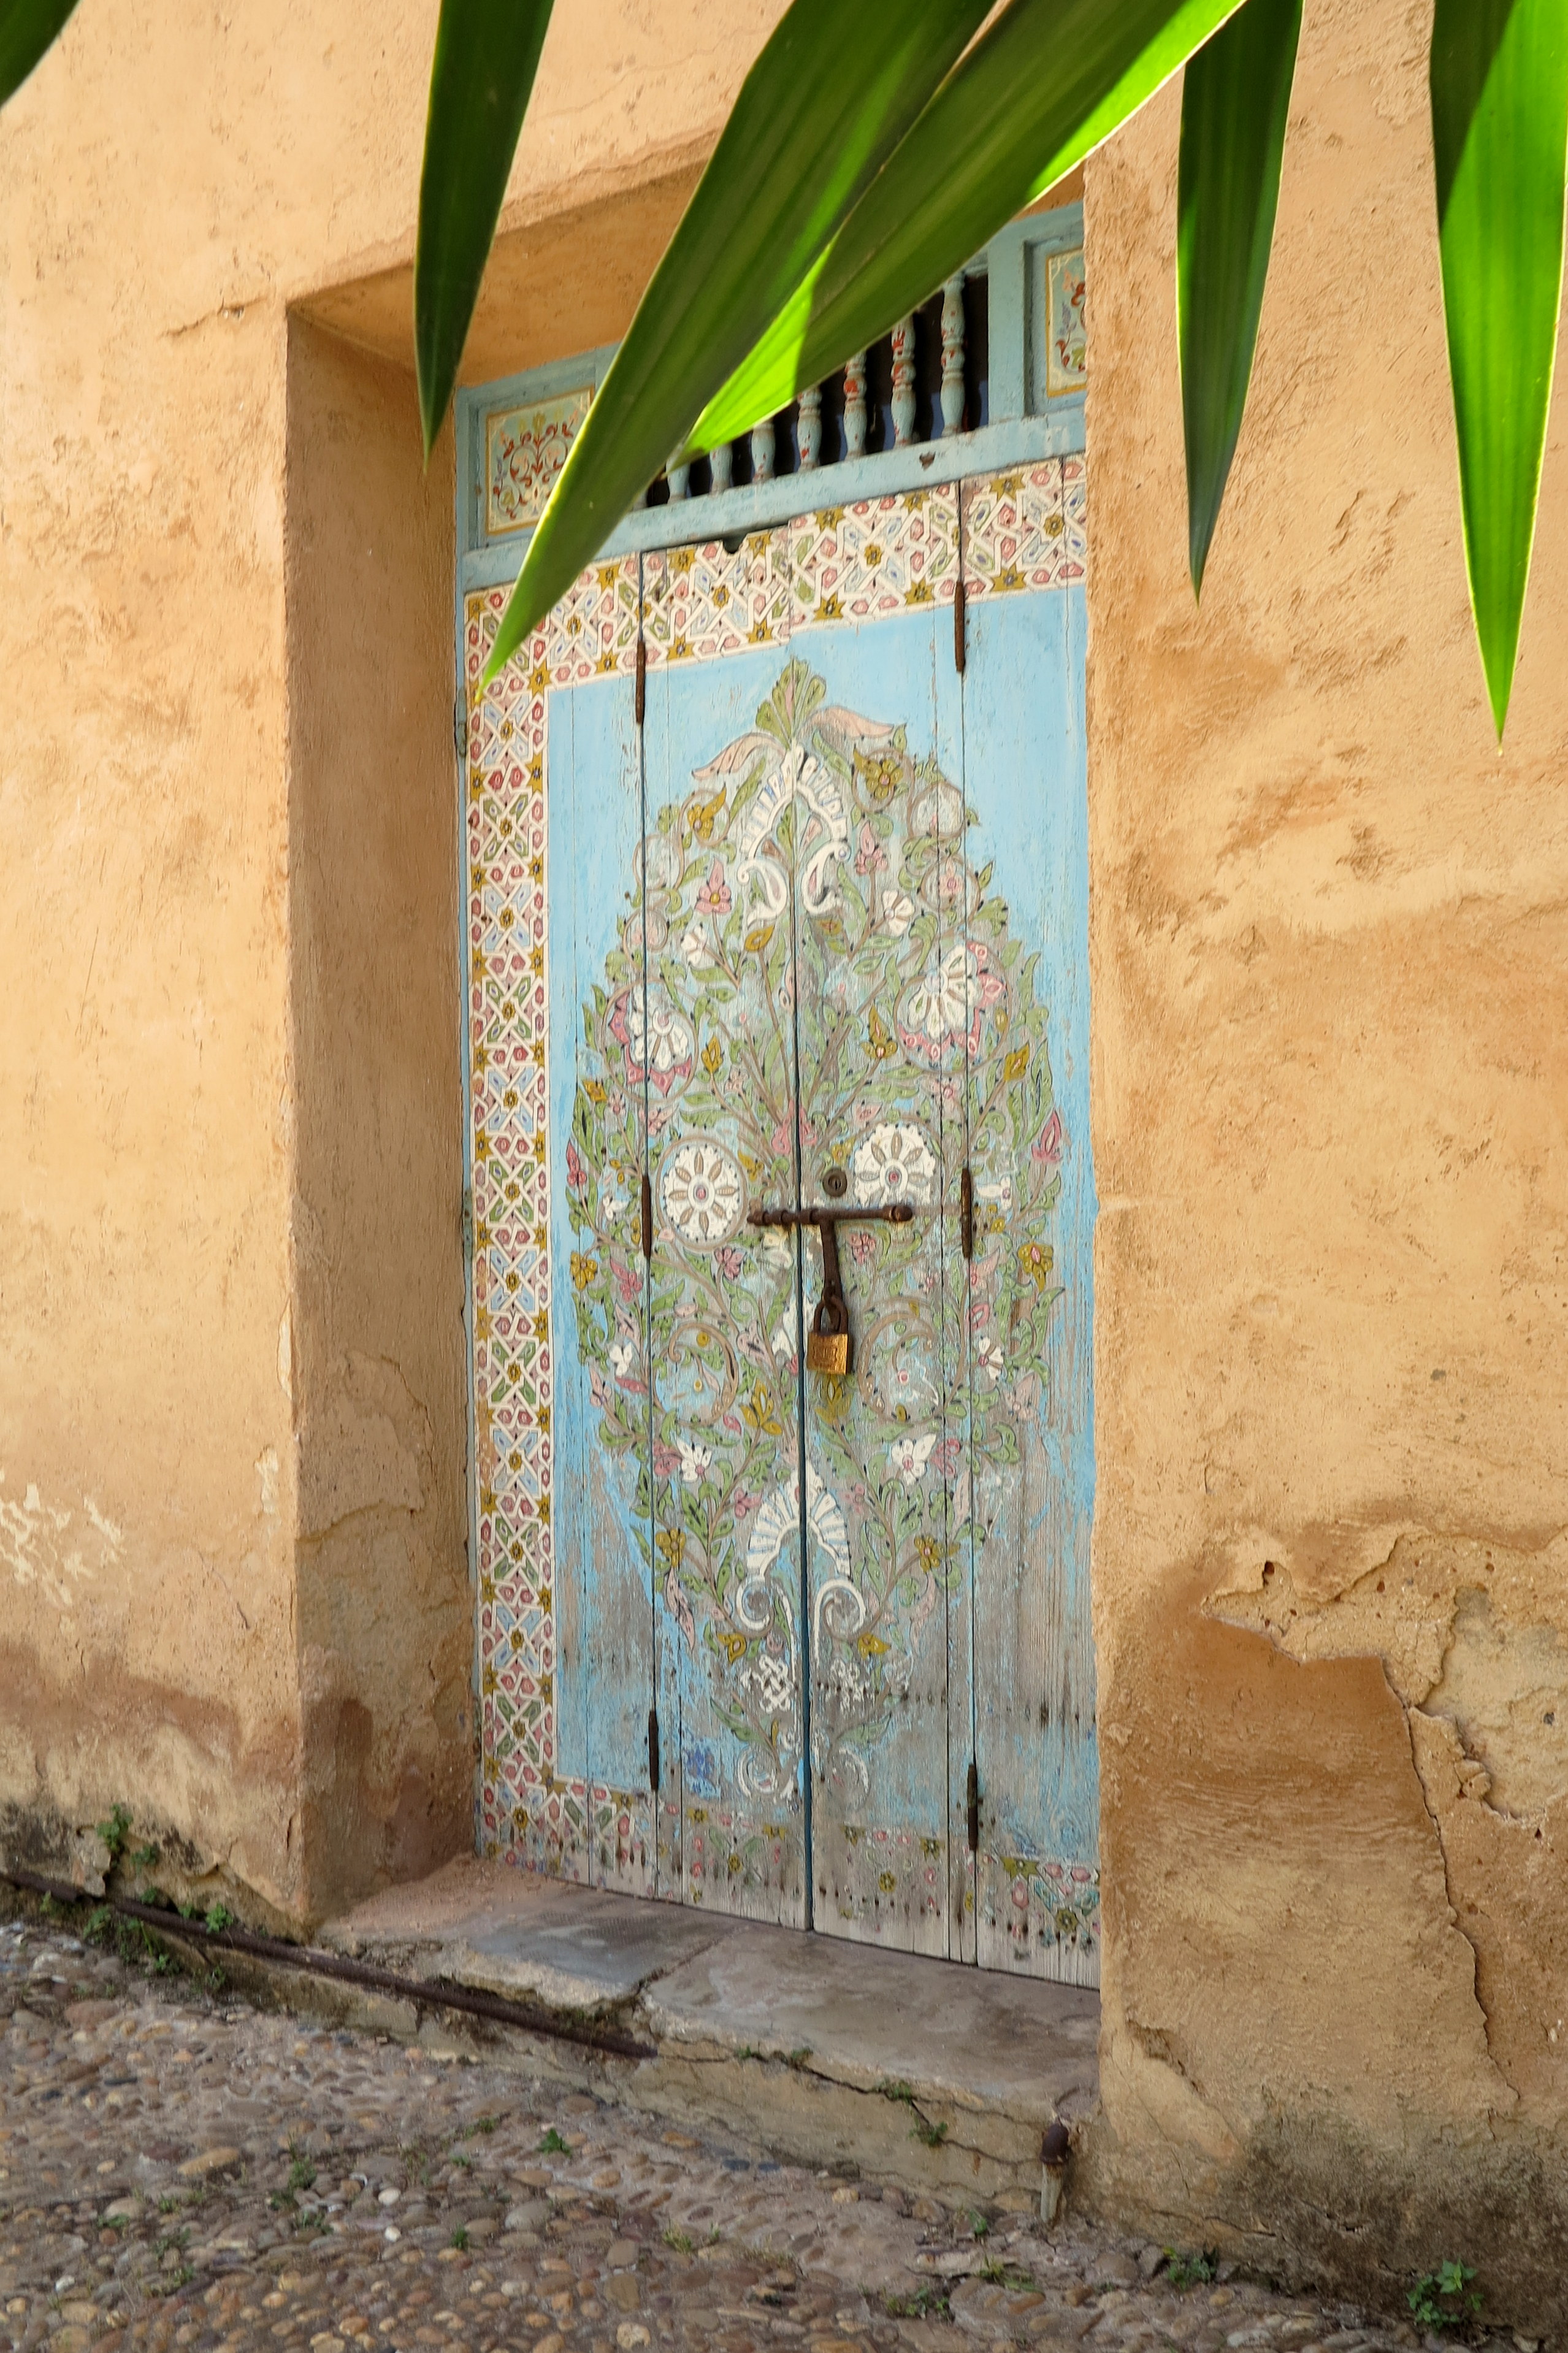 2014.6.3 IMG_4234 Door in Garden, Rabat, Morocco 2557x3837-001